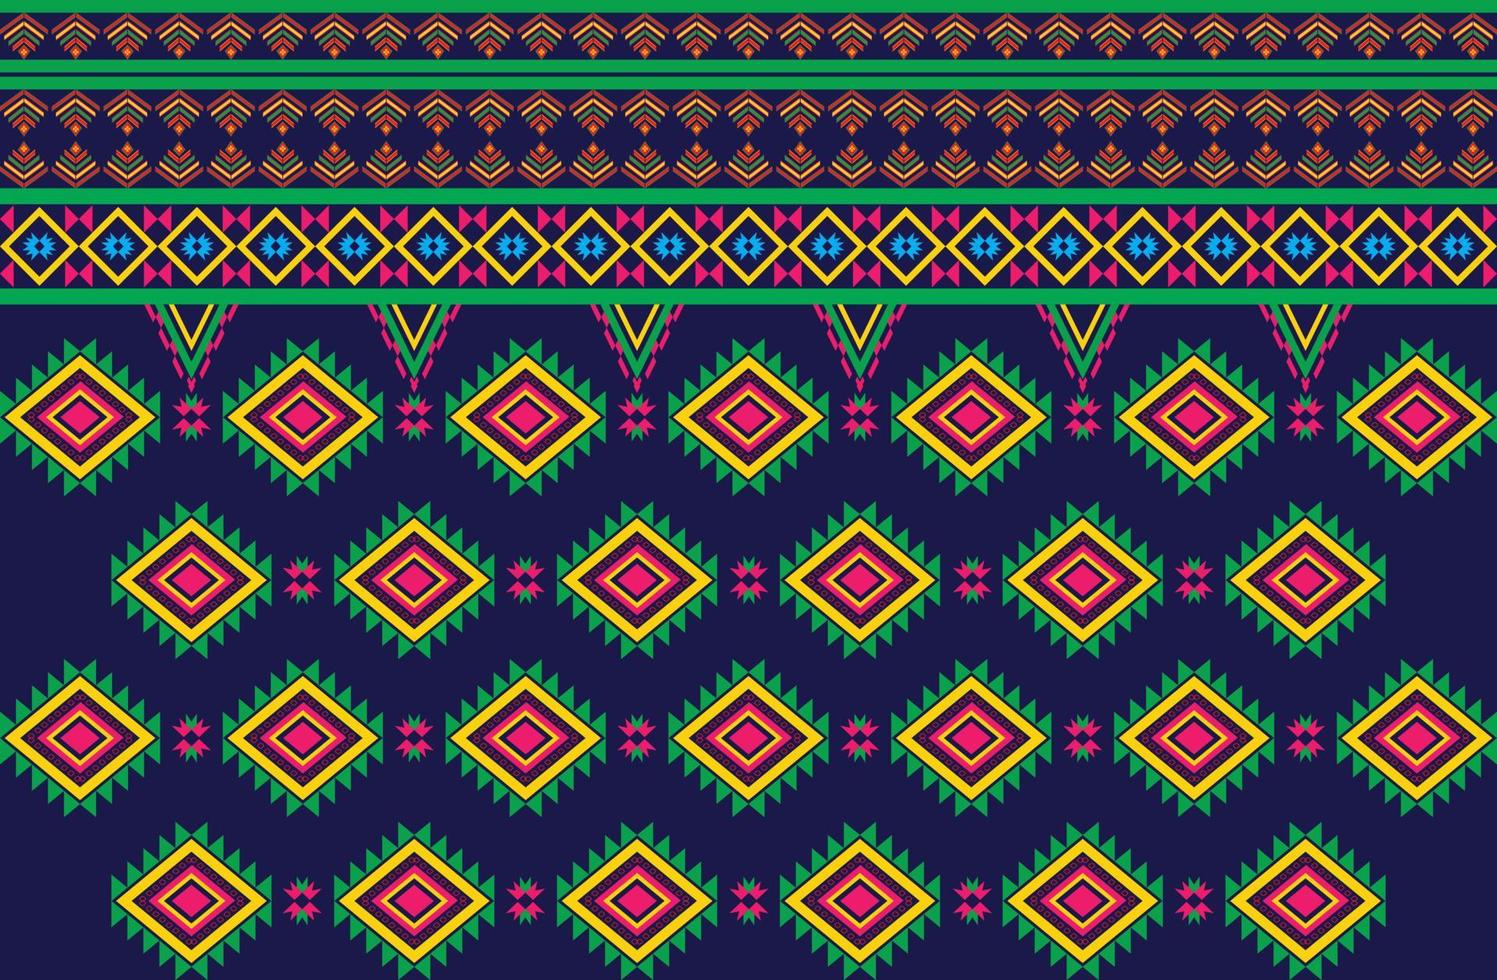 patrón de diseño geométrico tejido étnico oriental tradicional para el estilo de bordado, cortina, fondo, alfombra, papel pintado, tela, envoltura, batik, tela, ilustración vectorial. vector